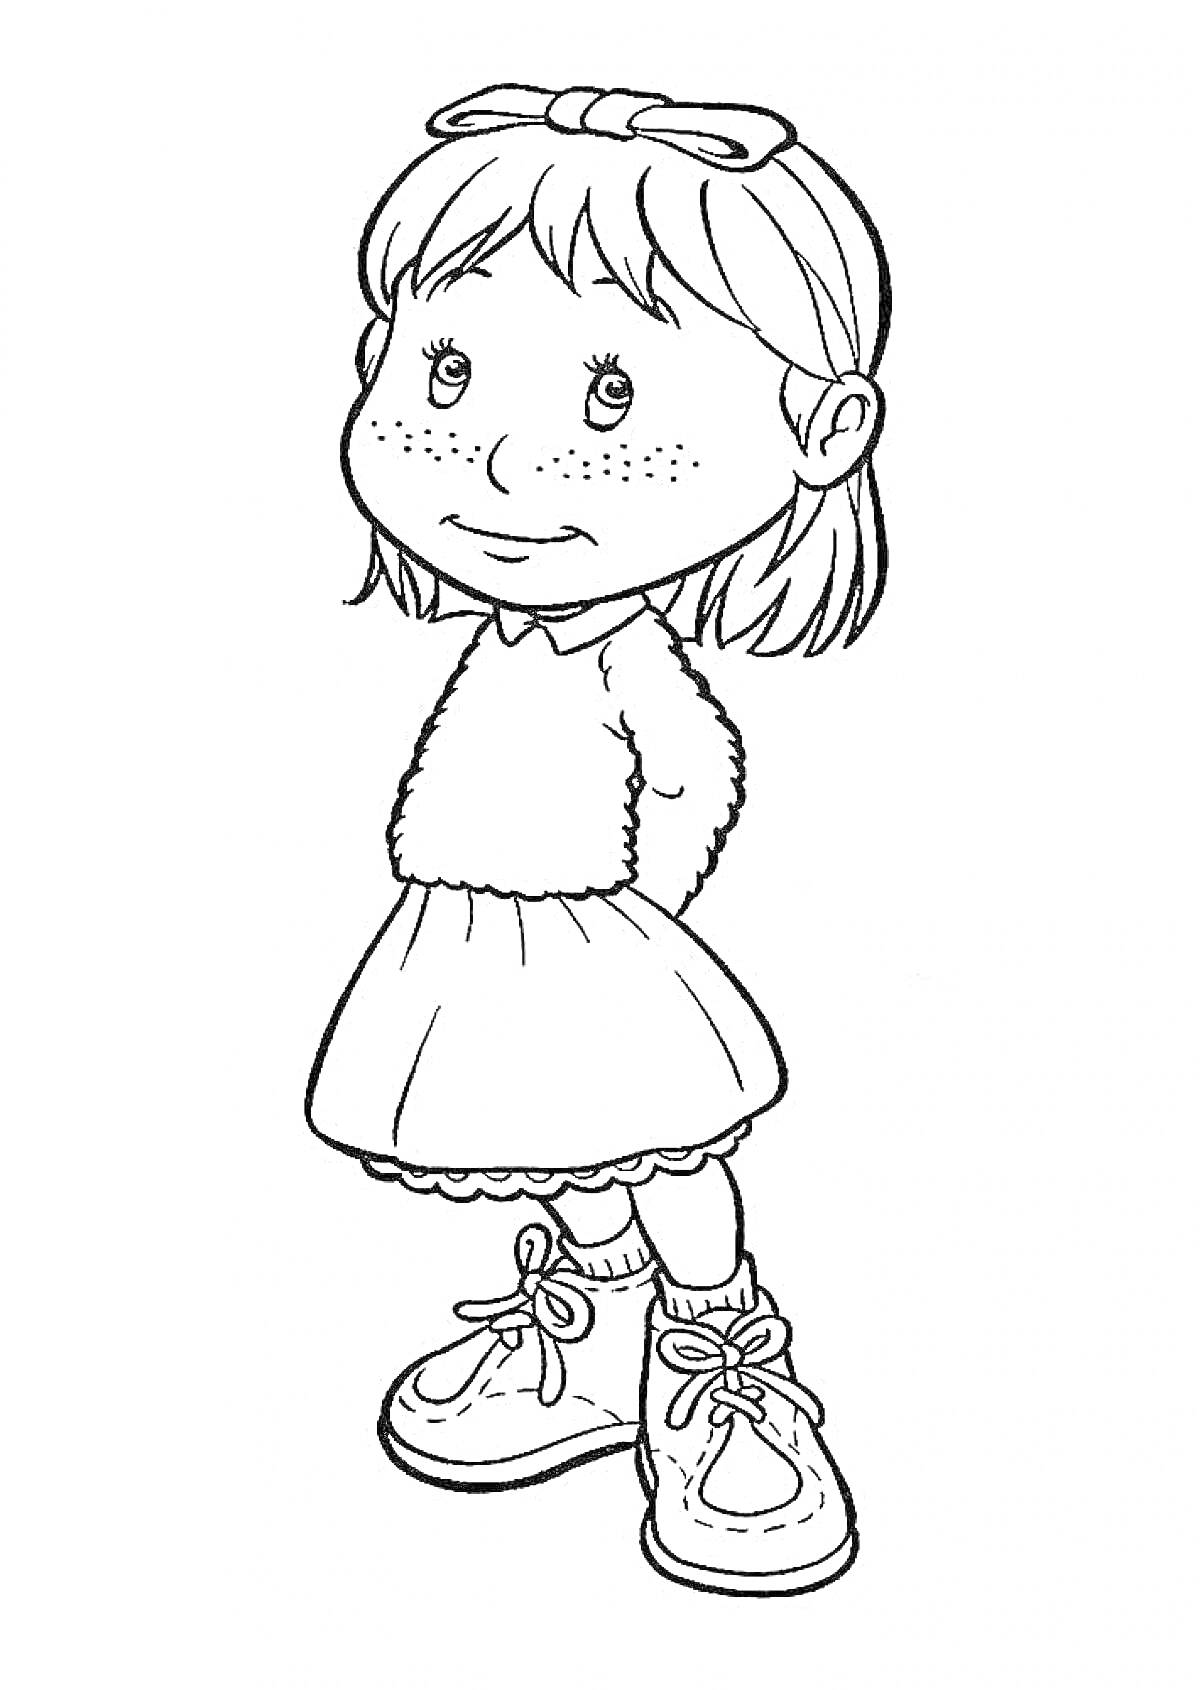 Раскраска Девочка с бантиком на голове, в рубашке с длинными рукавами, юбке и ботинках